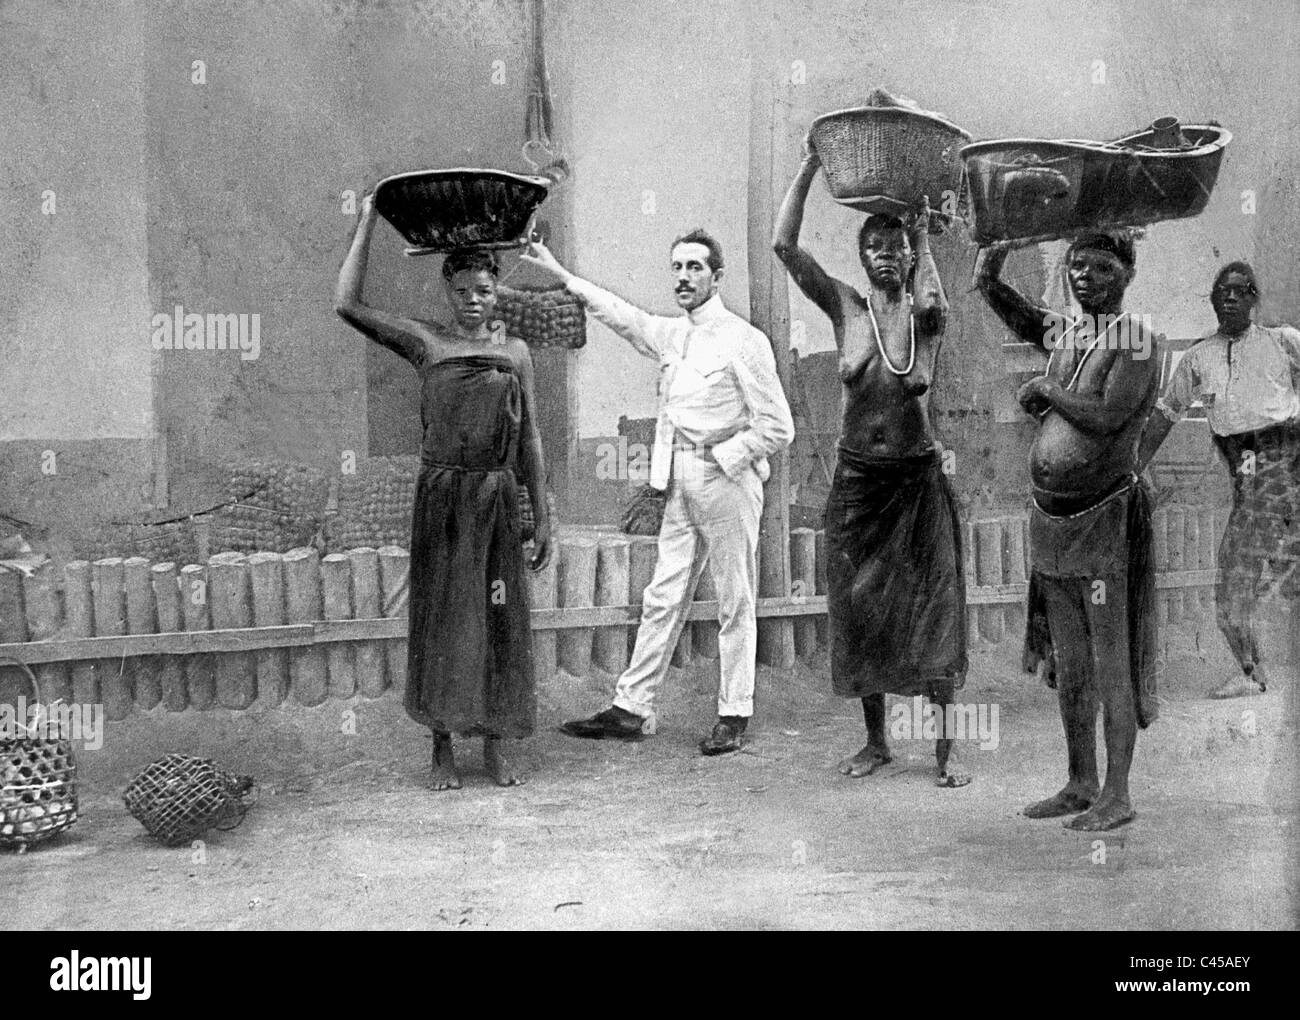 L'employé belge supervise les travailleuses noires sur une plantation, 1899 Banque D'Images